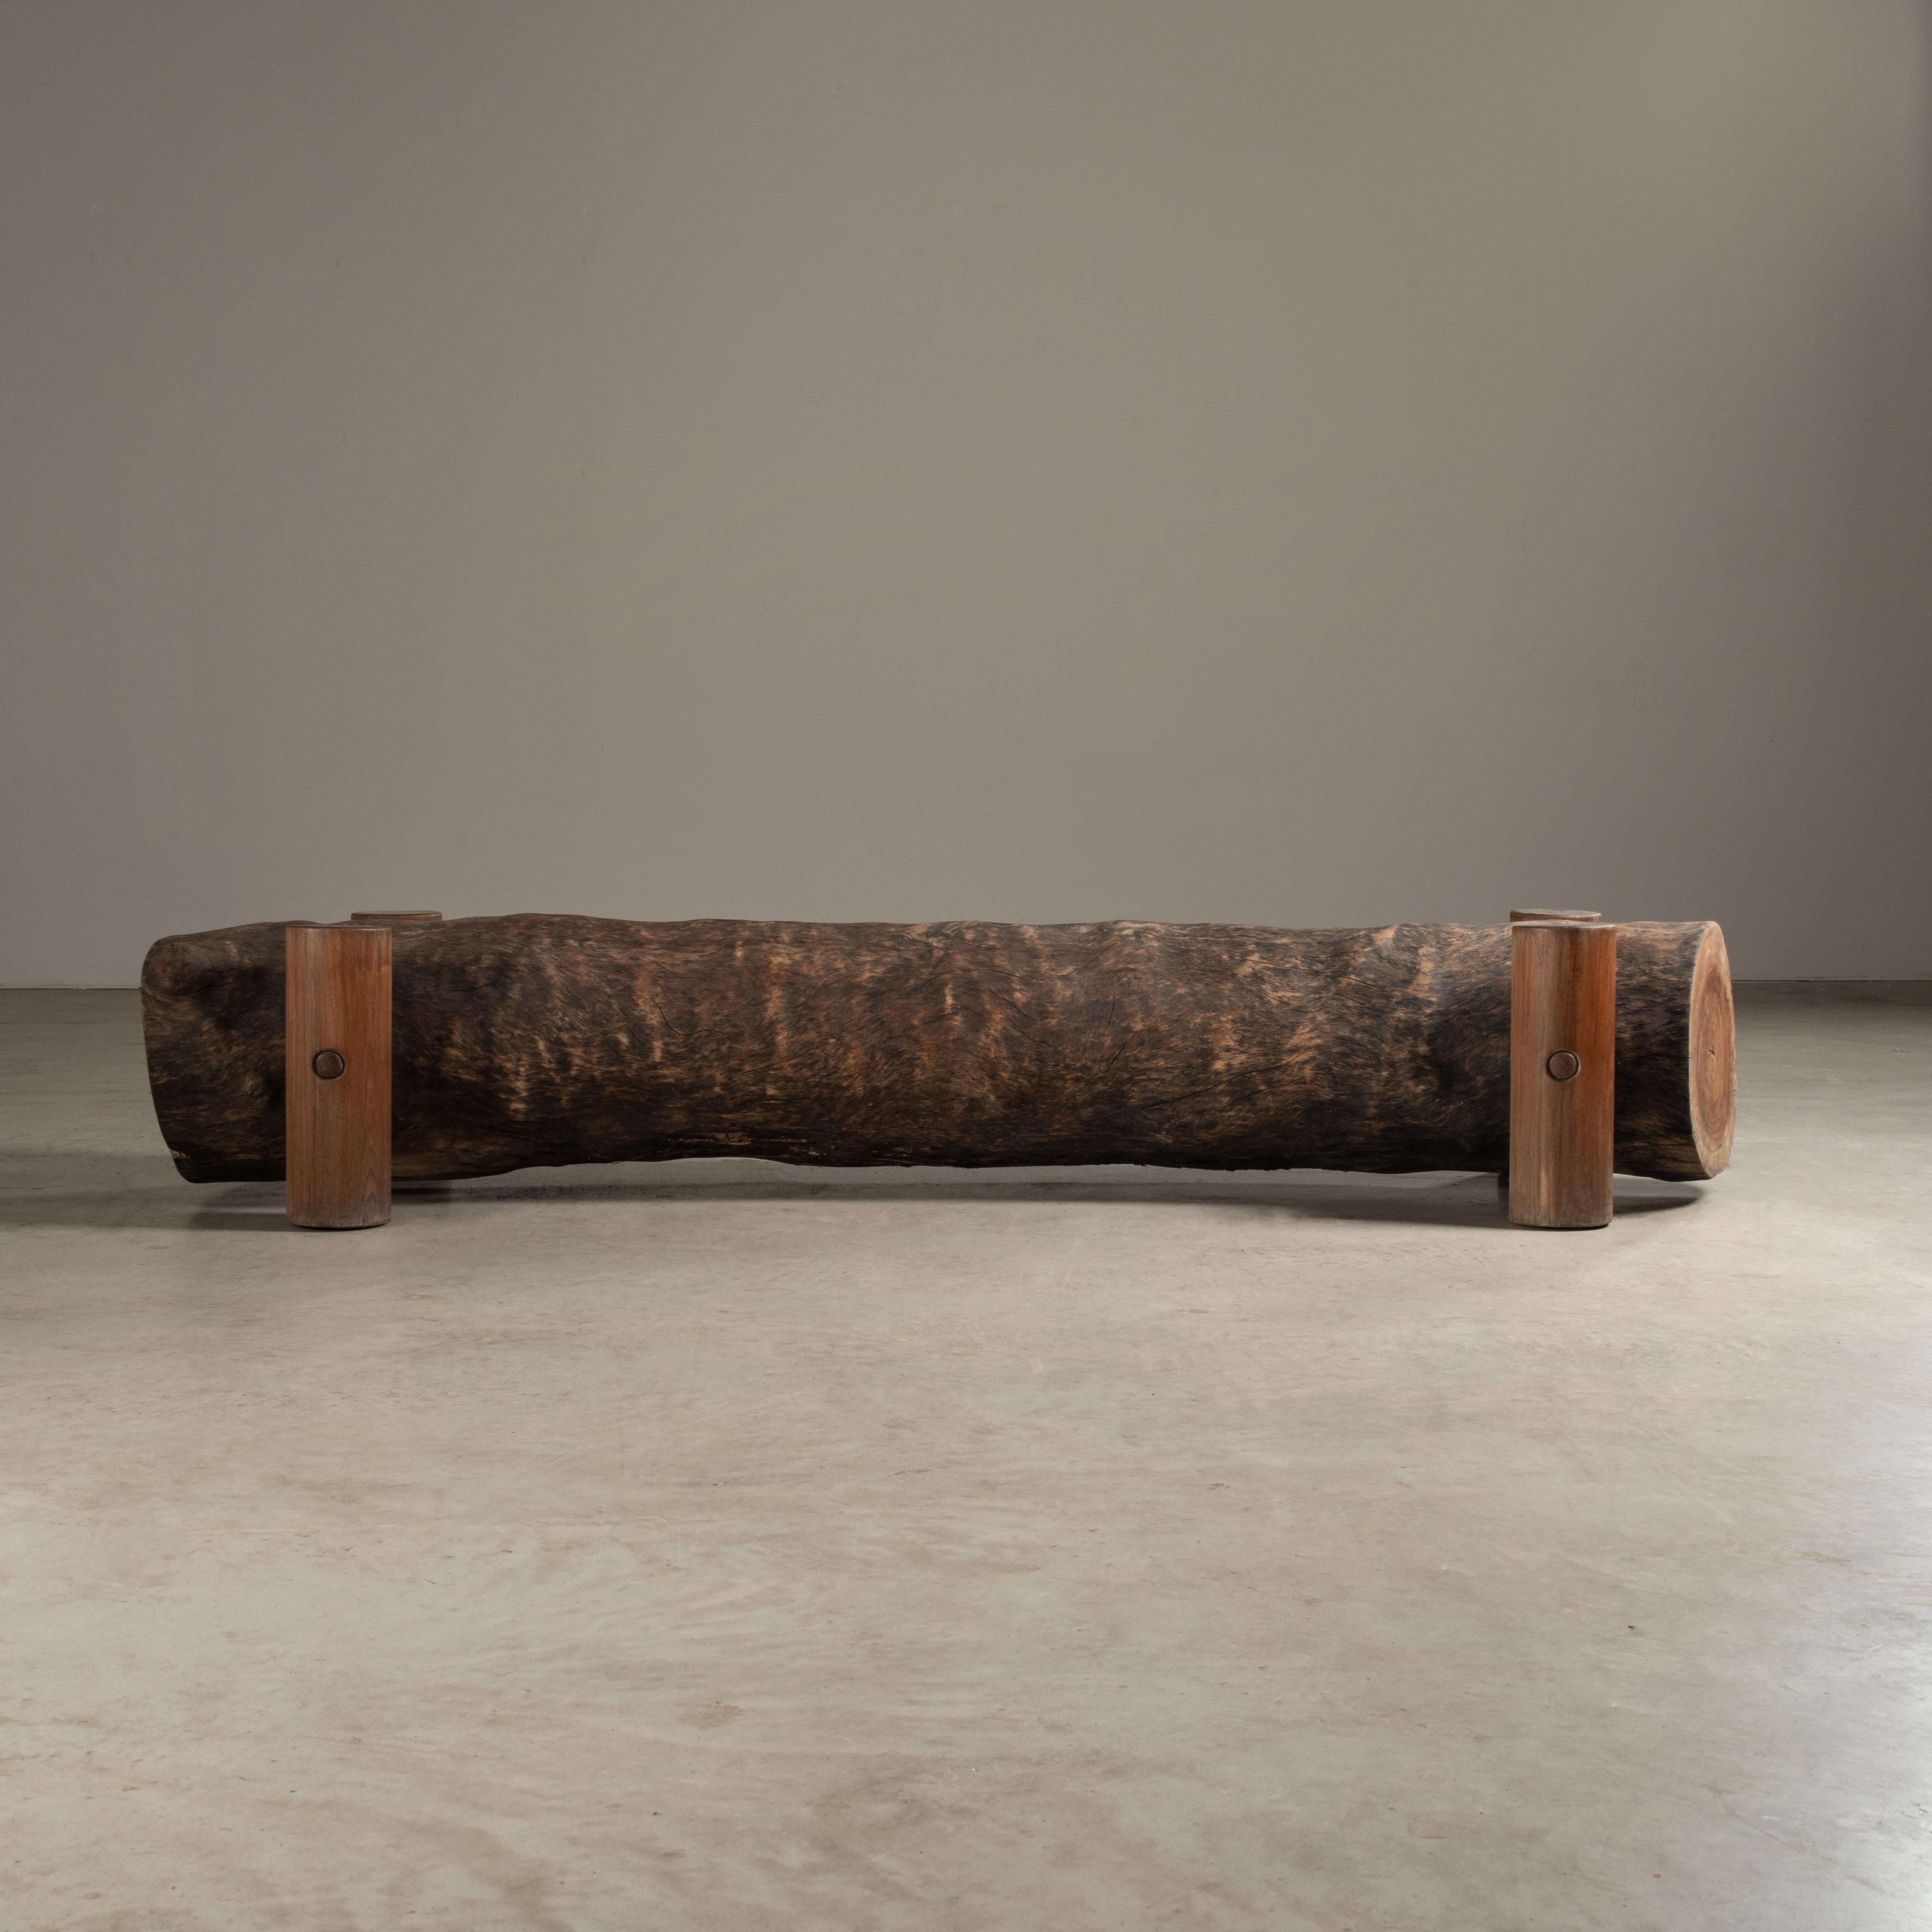 Die von Zanini entworfene Sitzbank Tora ist ein schönes Beispiel für zeitgenössisches Design, das die Schönheit und Form natürlicher Materialien hervorhebt. Die Bank zeichnet sich durch ihr organisches und robustes Erscheinungsbild aus, das durch